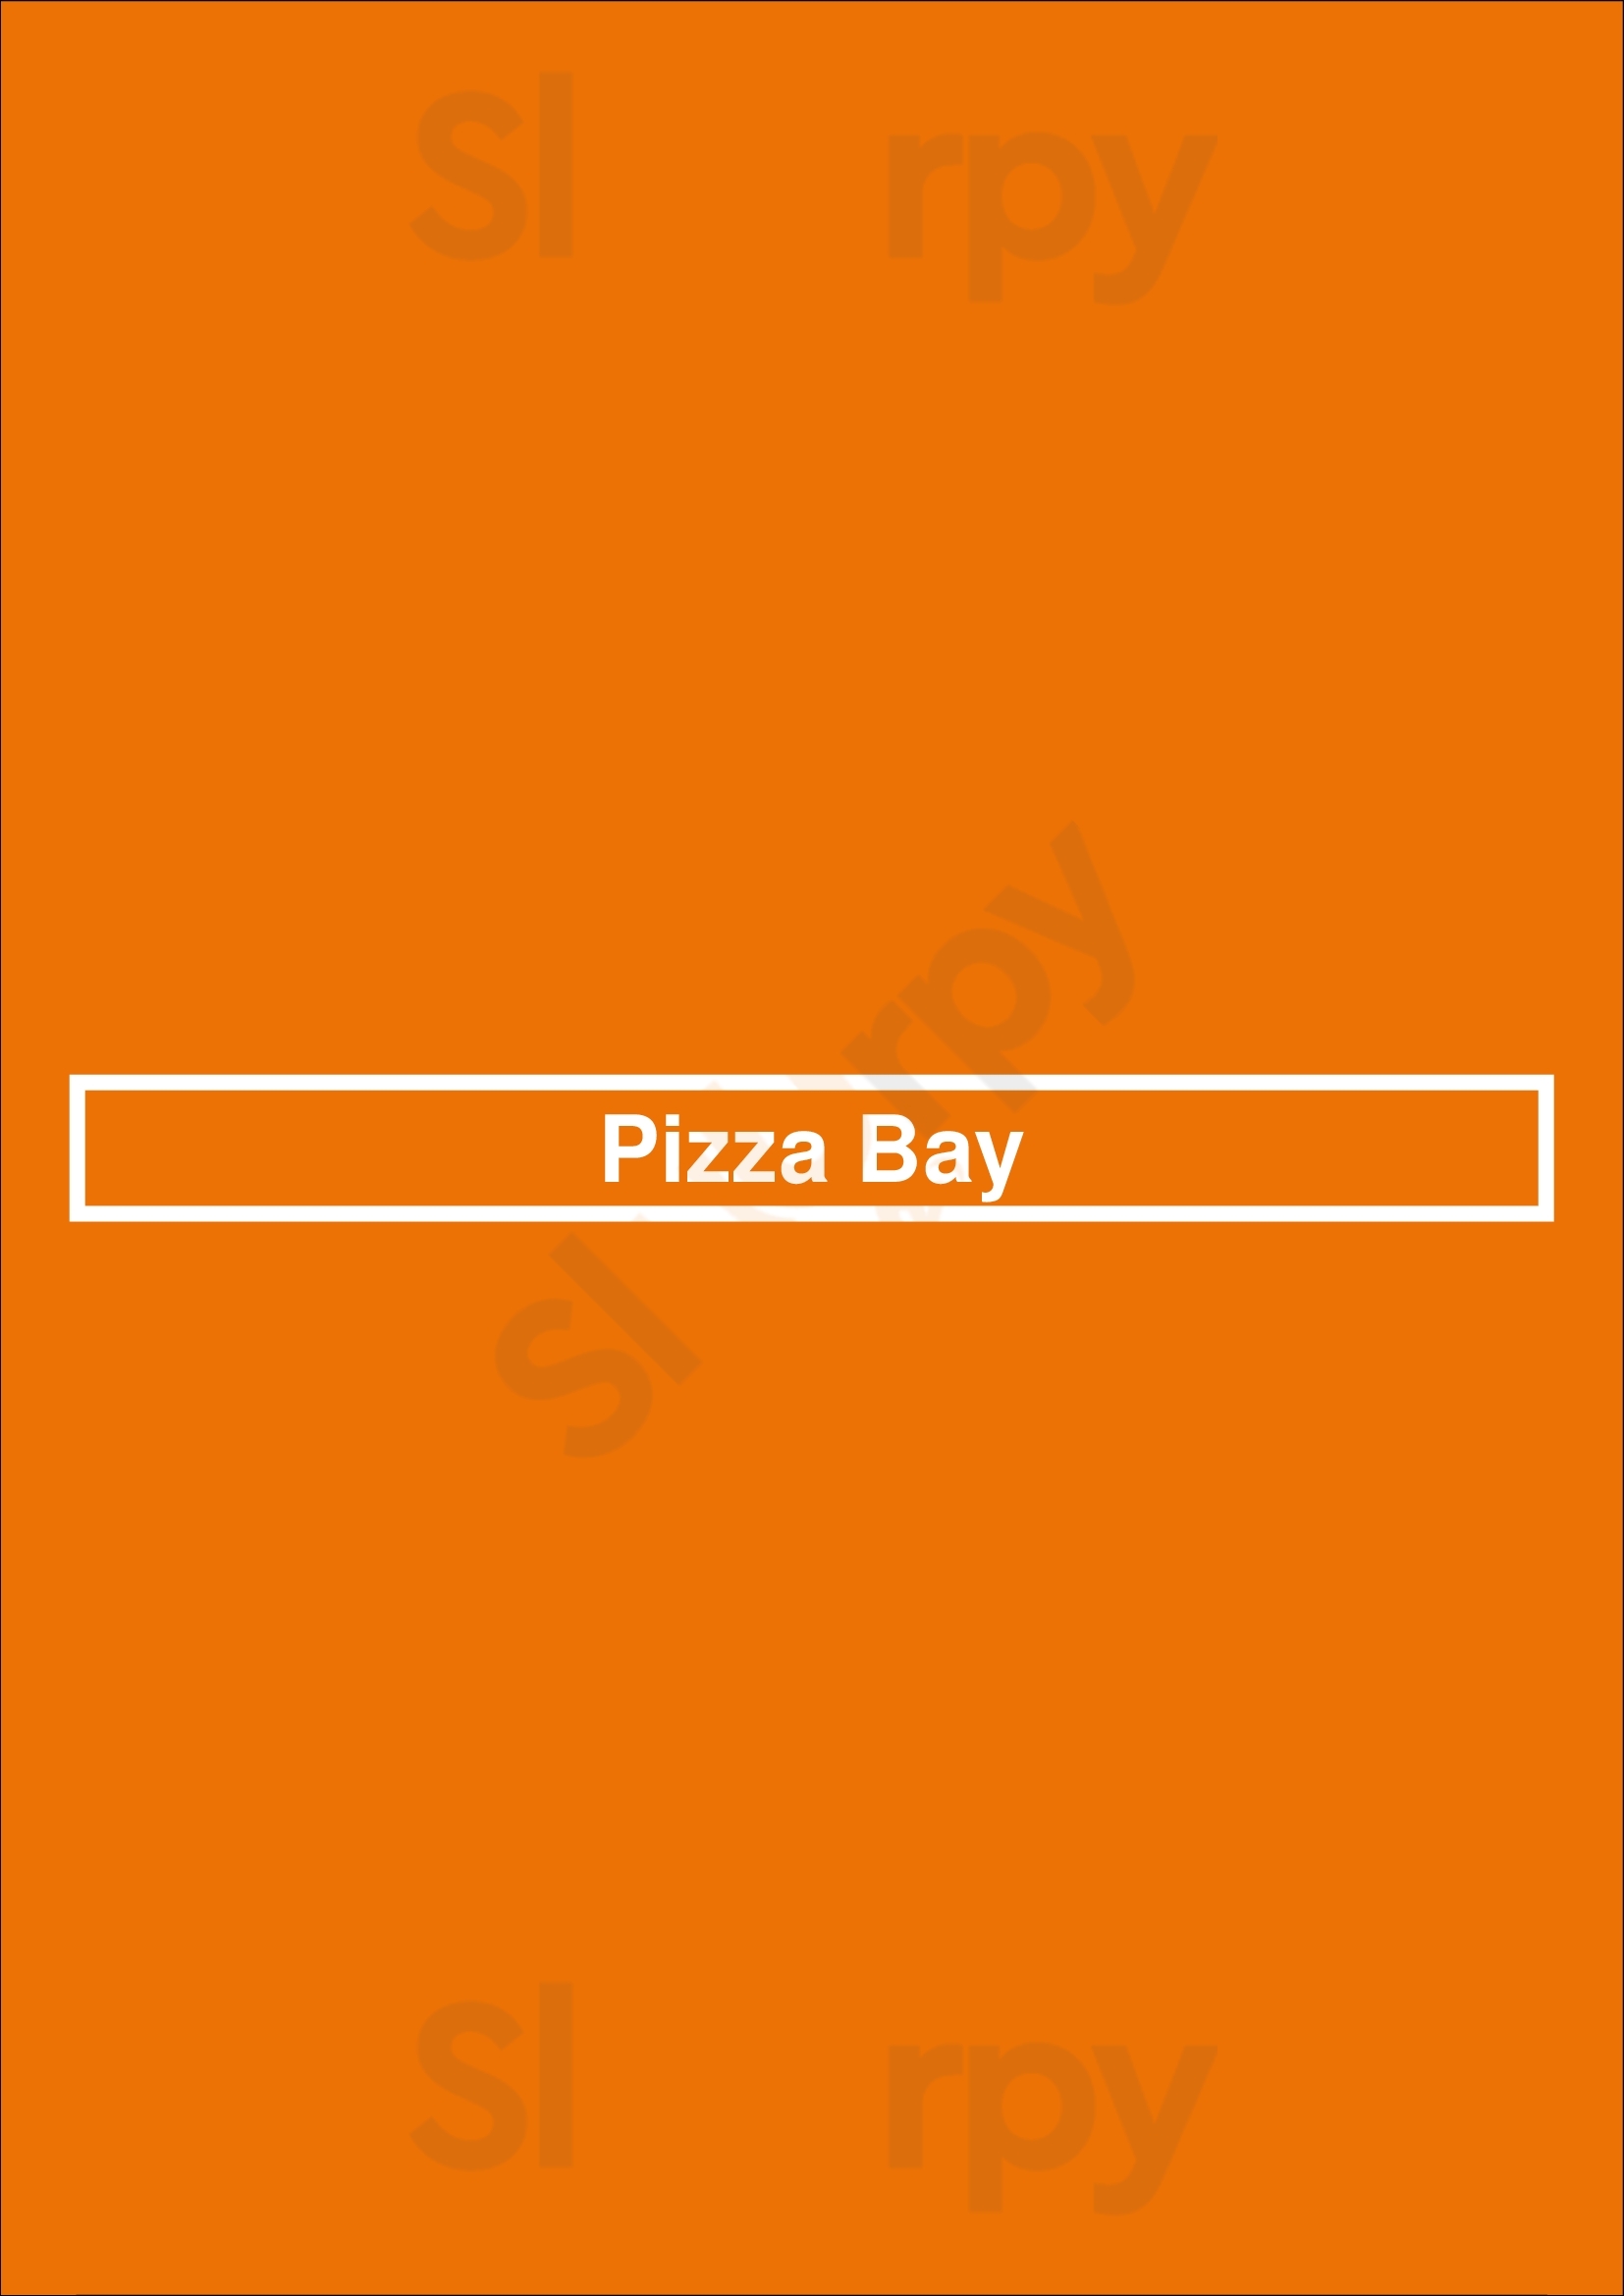 Pizza Bay Brampton Menu - 1